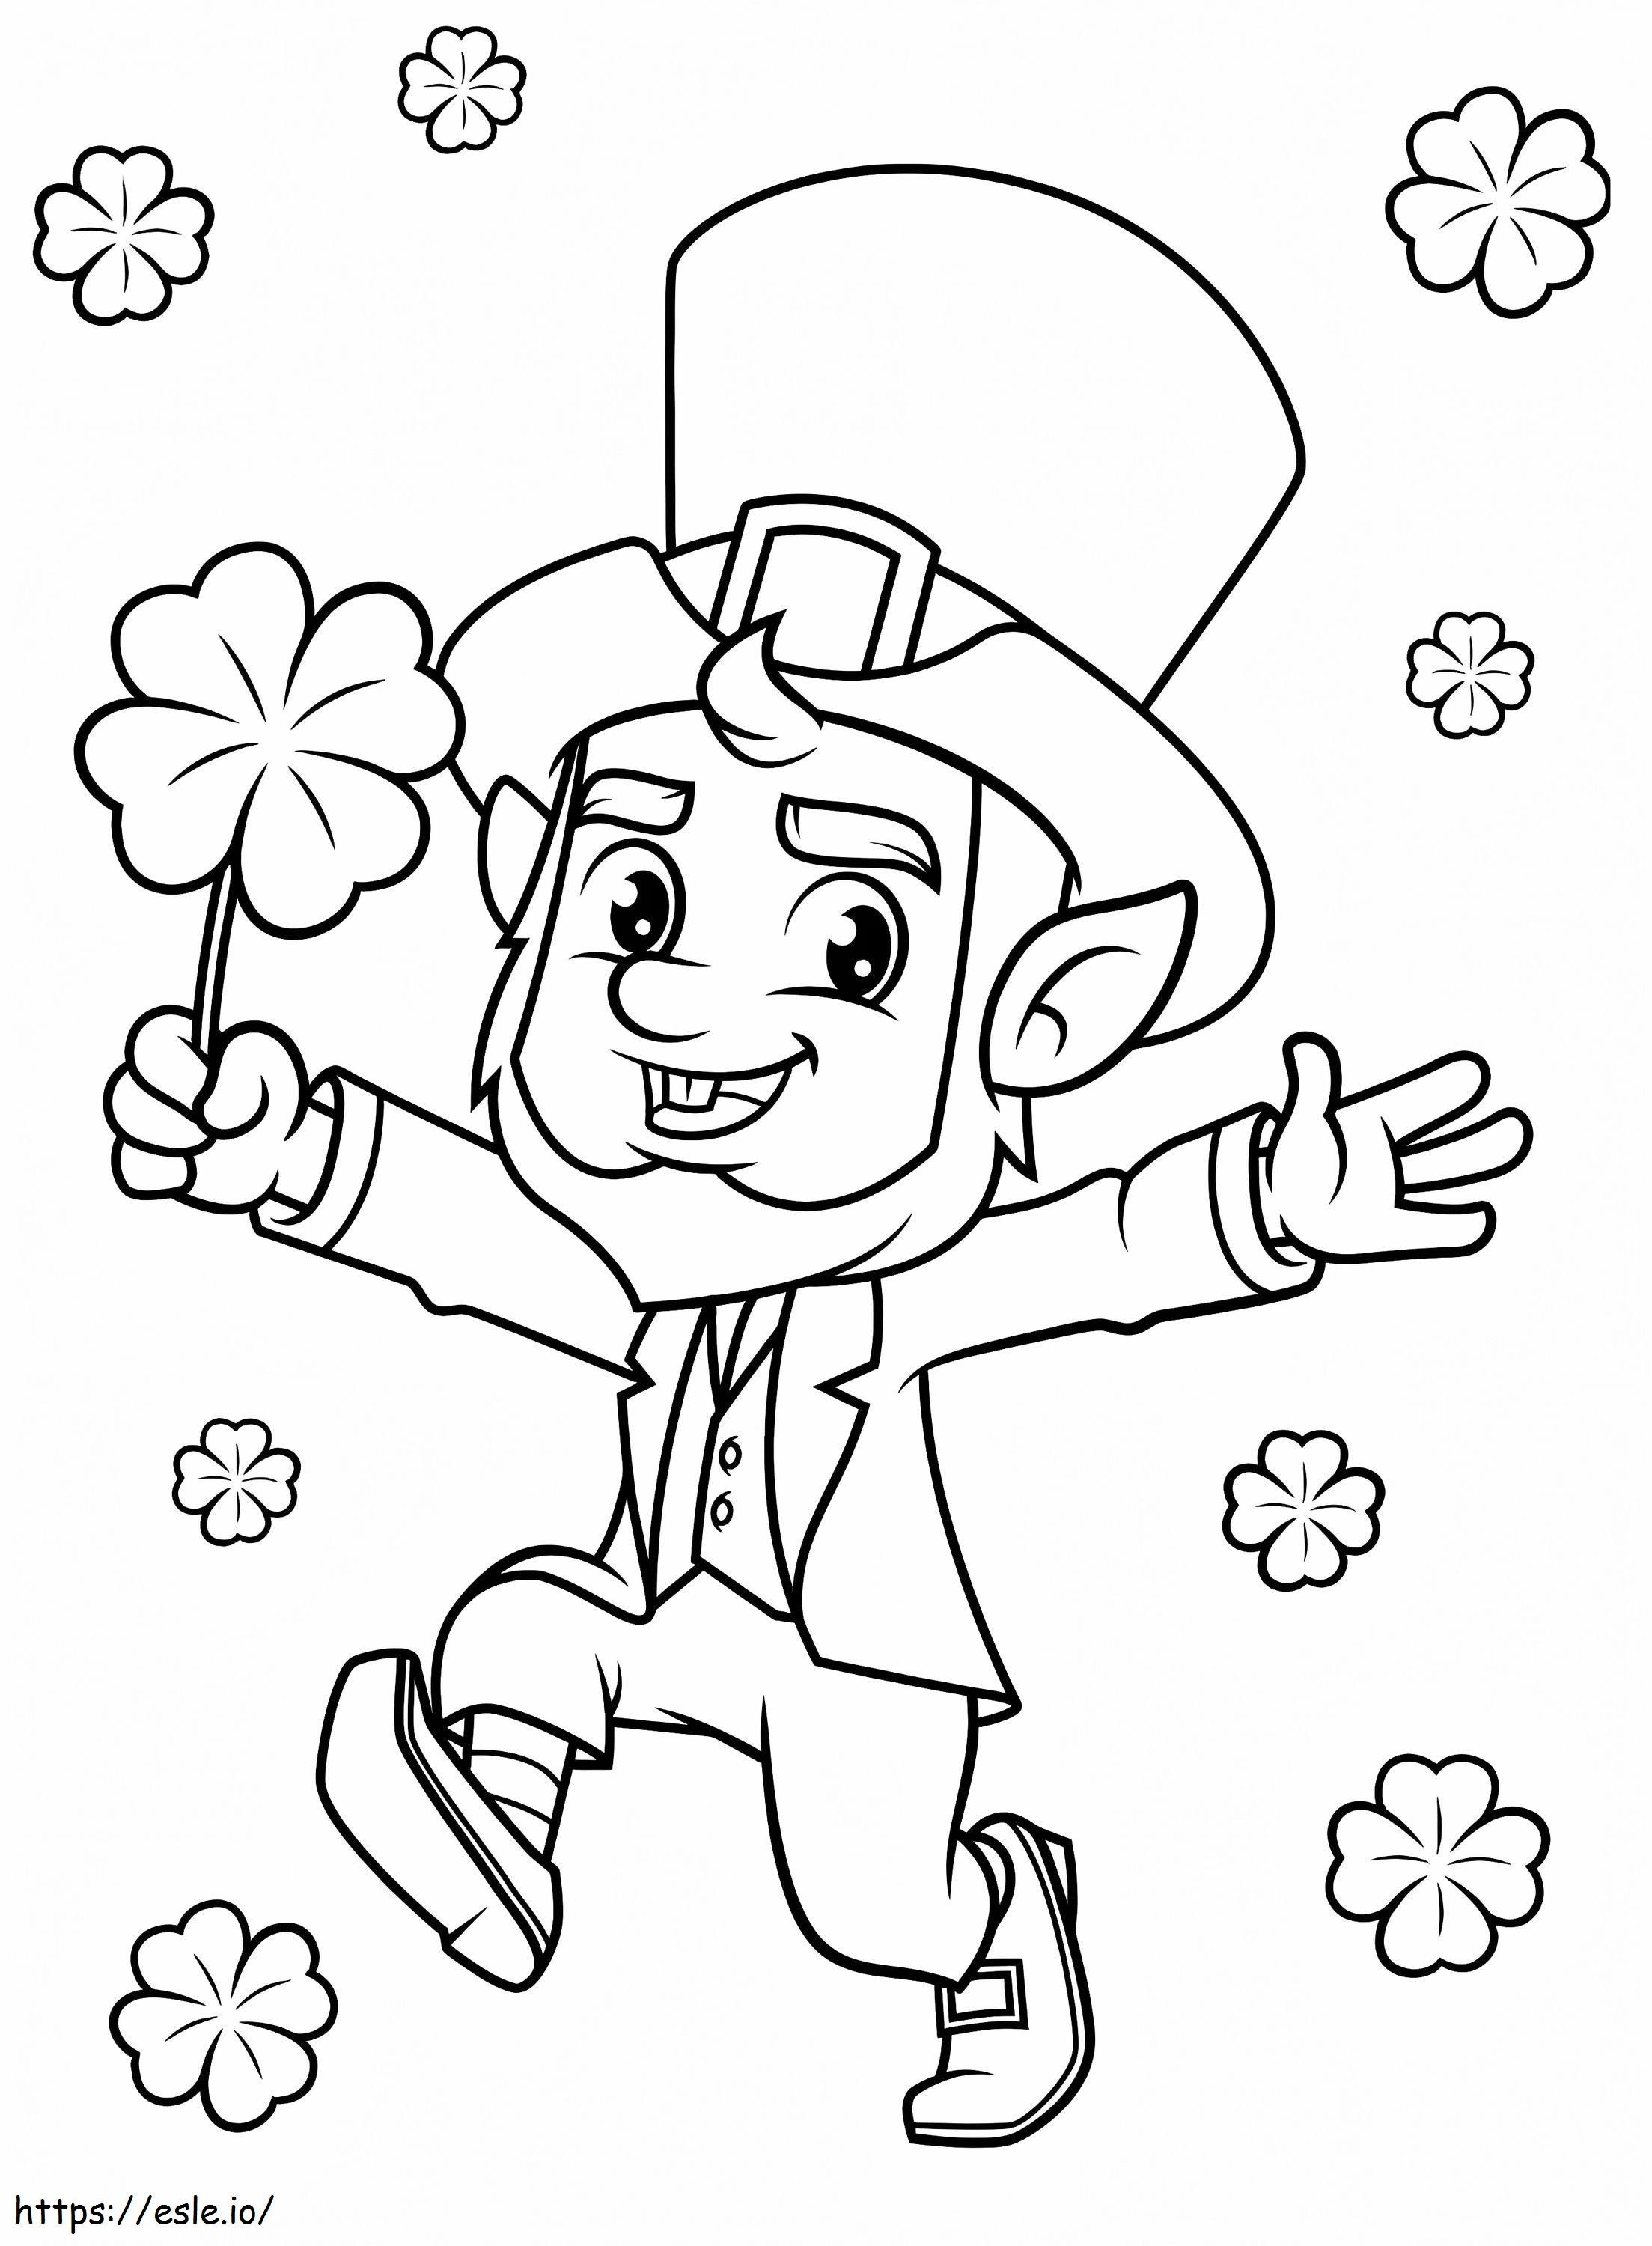 Printable Happy Leprechaun coloring page